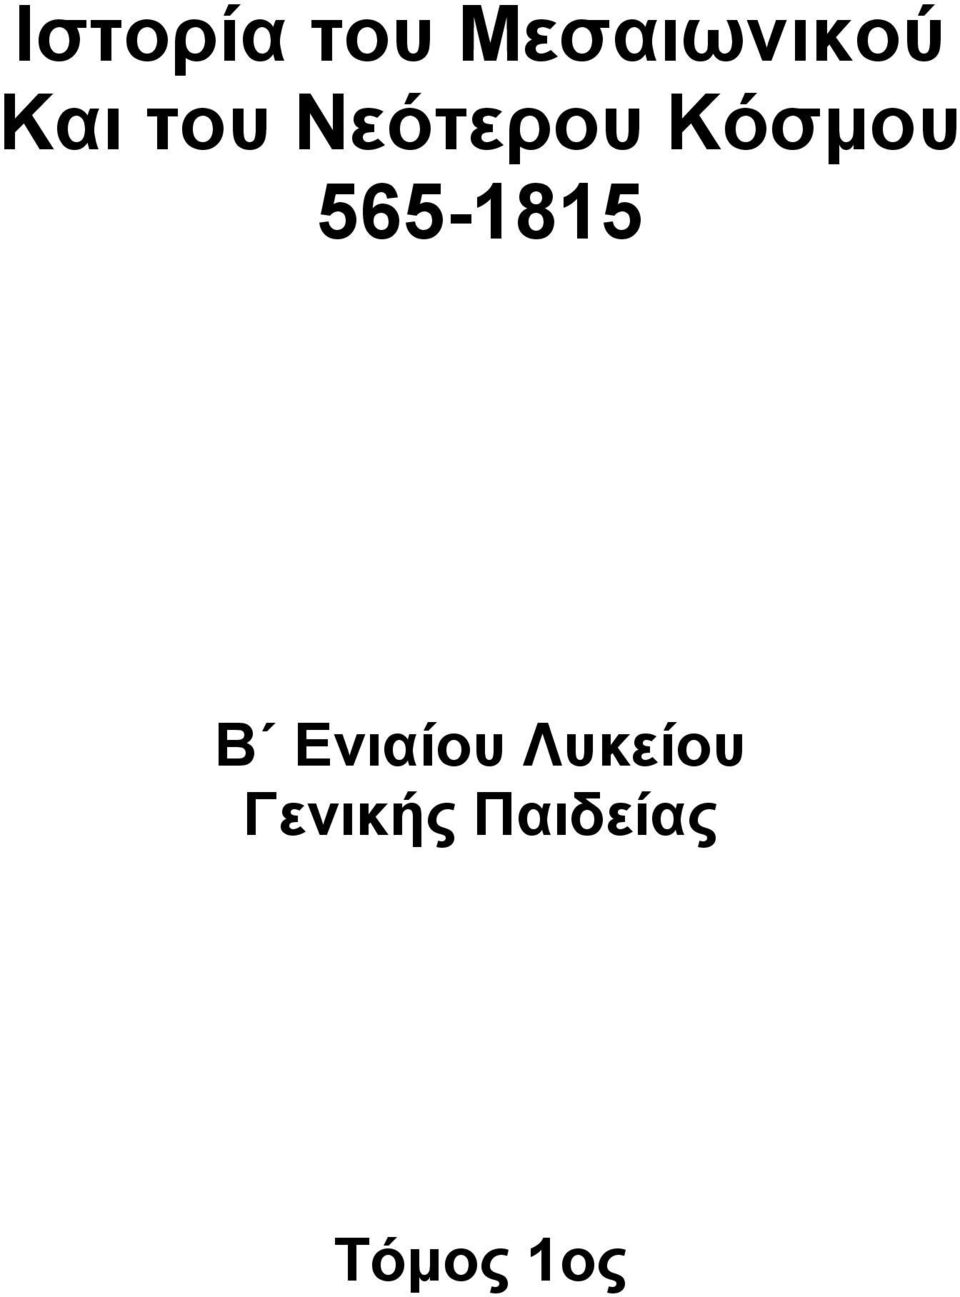 565-1815 Β Ενιαίου